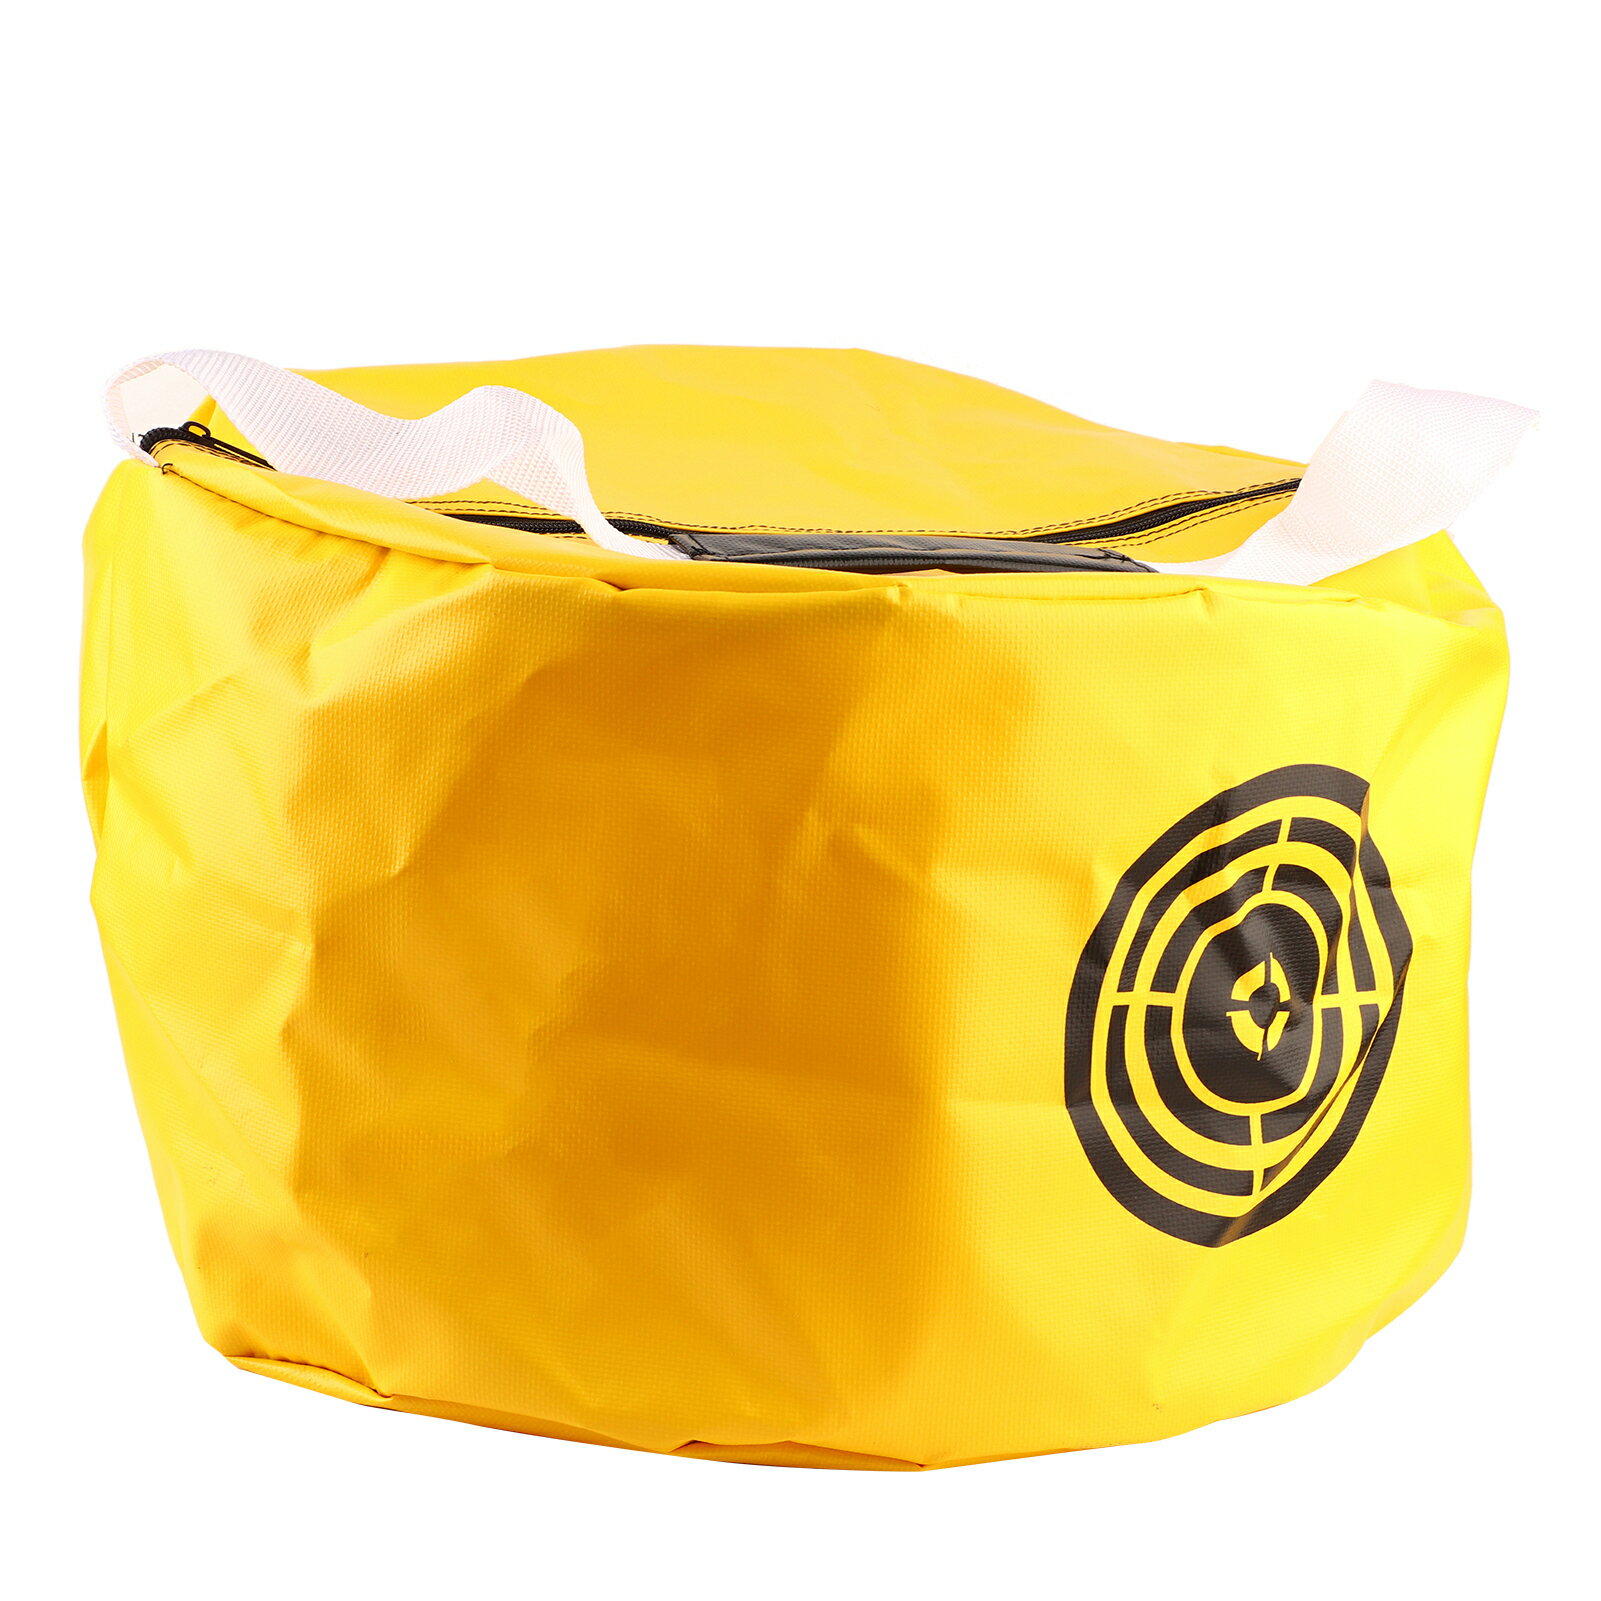 ゴルフ トレーニング バッグ, ハイテク合成安全で信頼性の高いゴルフ スイング トレーニング バッグ リラクゼーション用 ゴルフ アクセサリー アウトドア スポーツ用 ゴルフ ゲーム(yellow, Blue)